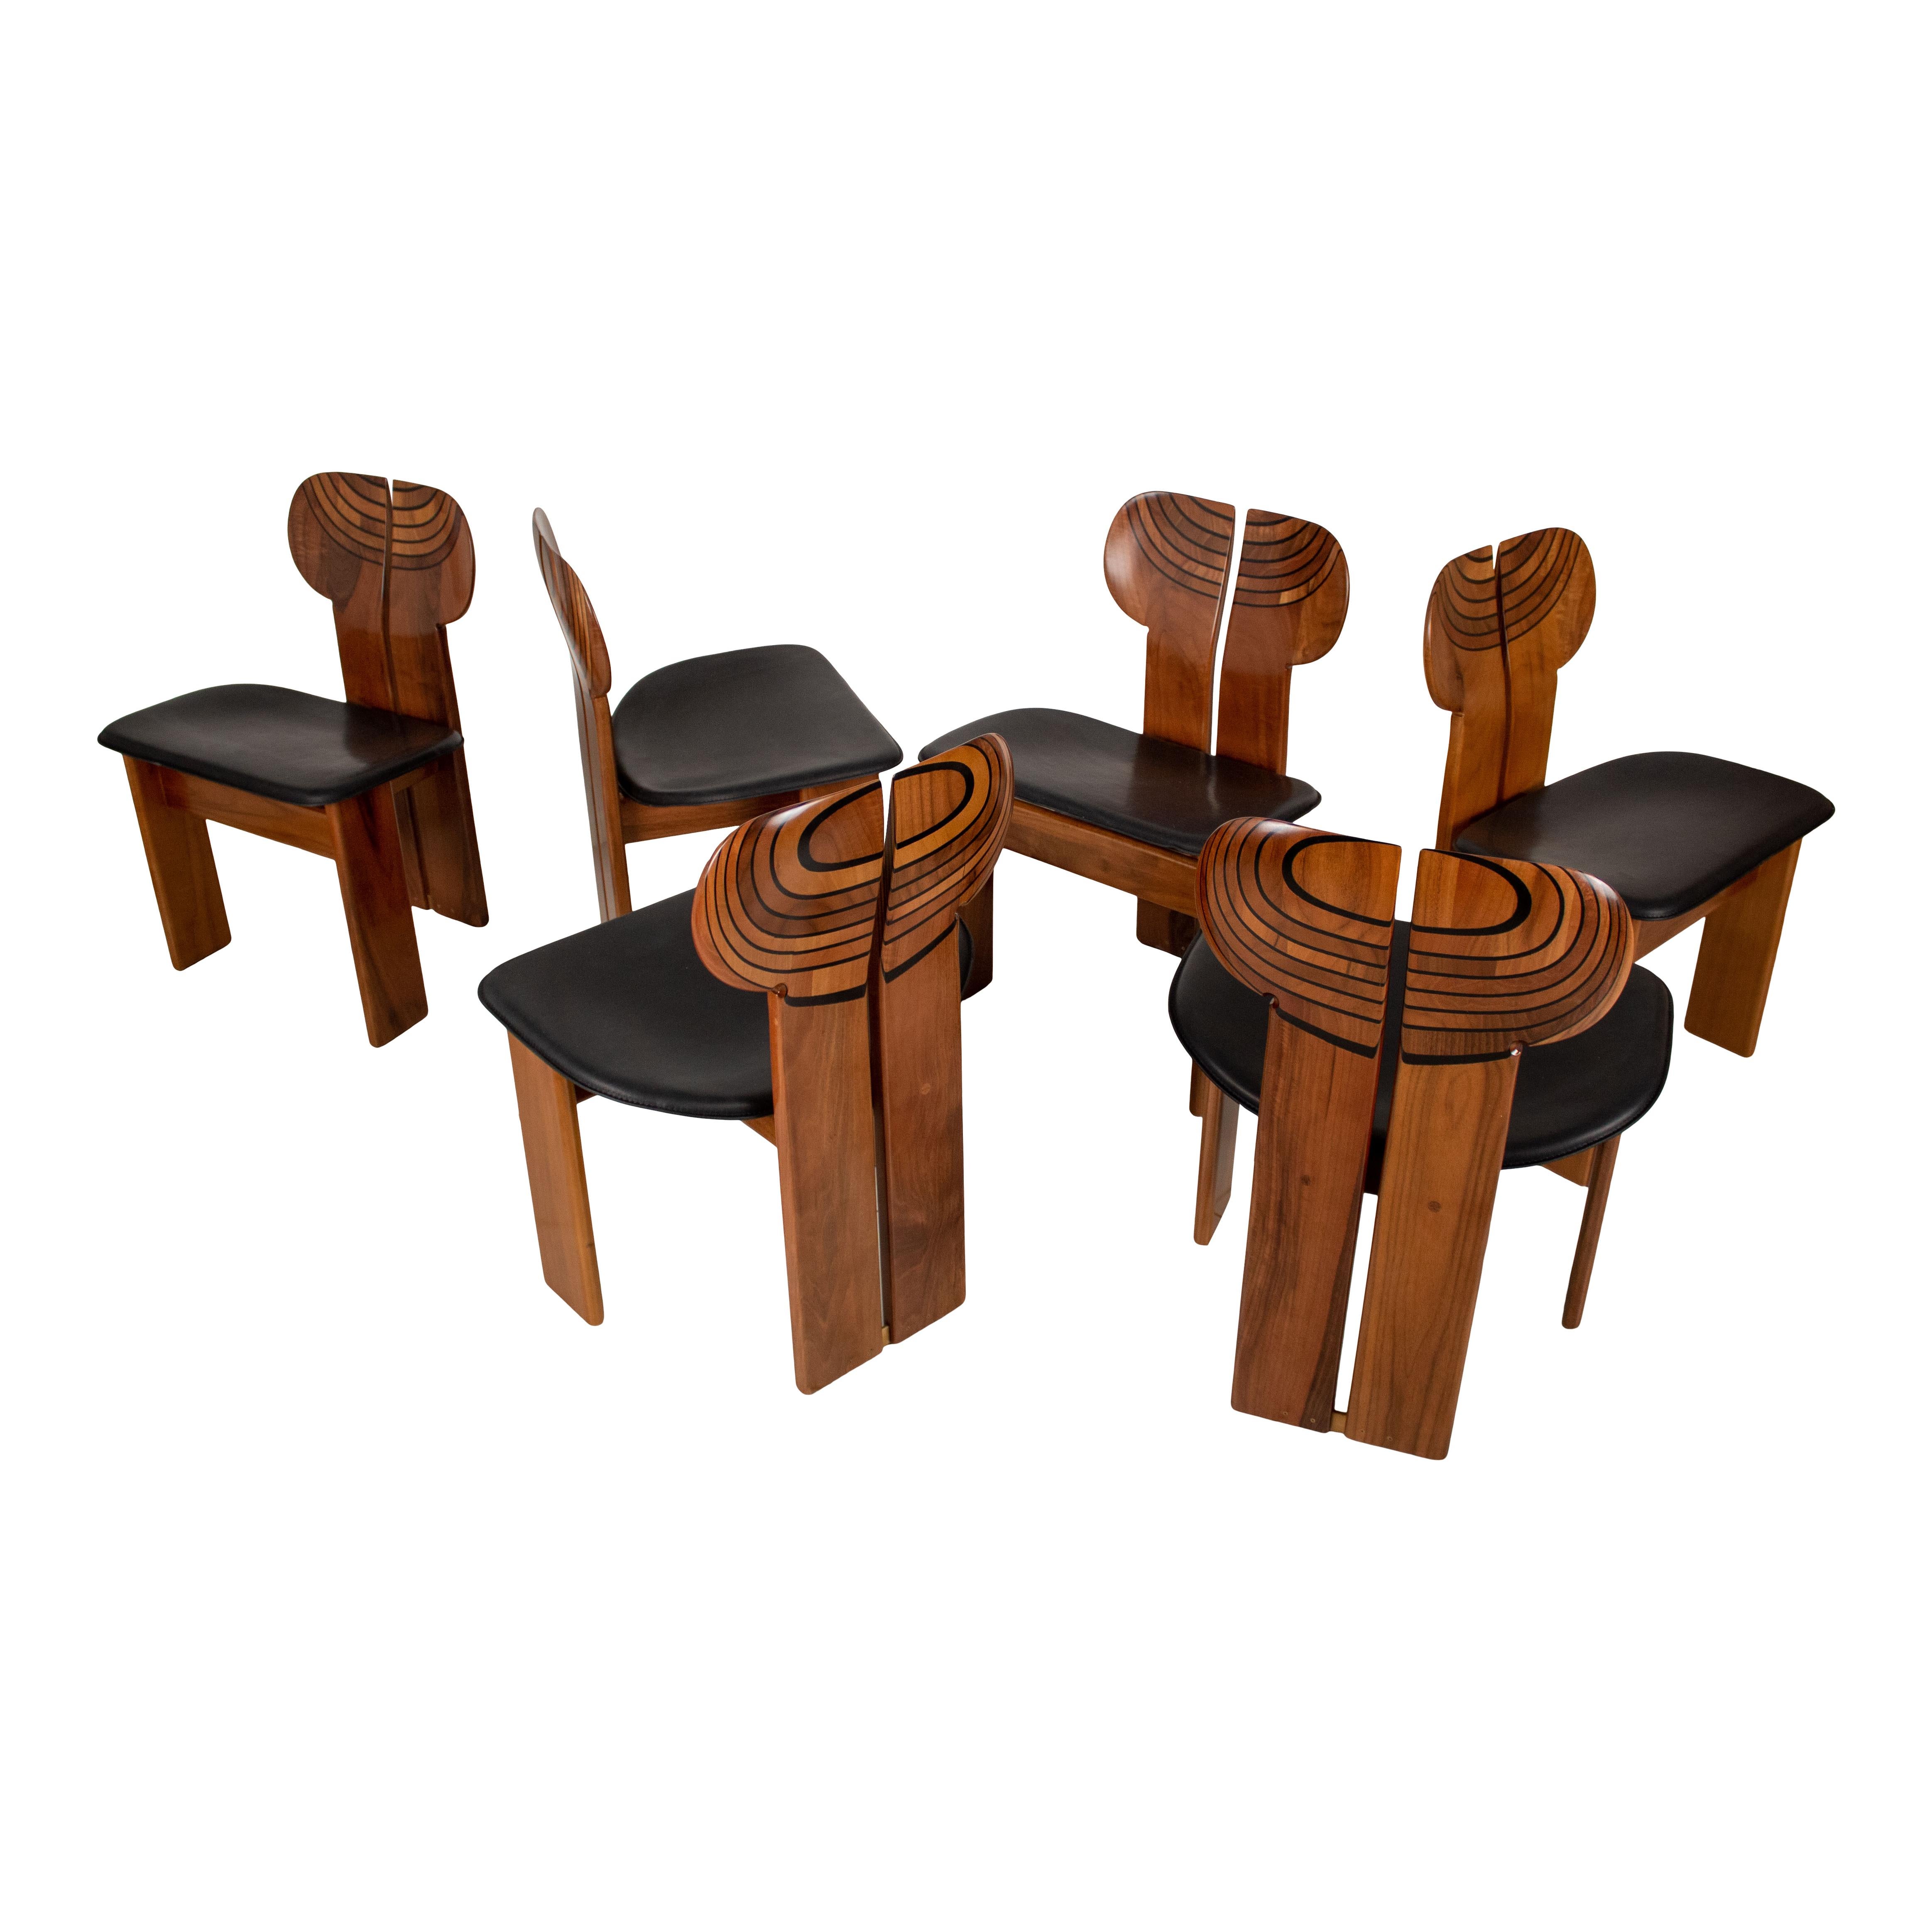 Ensemble de six chaises de salle à manger Africa, conçues par Afra et Tobia Scarpa et produites par le fabricant italien Maxalto en 1976.
Ils sont dotés d'une structure en briar de noyer clair et d'un siège en cuir noir et cognac.
Entièrement